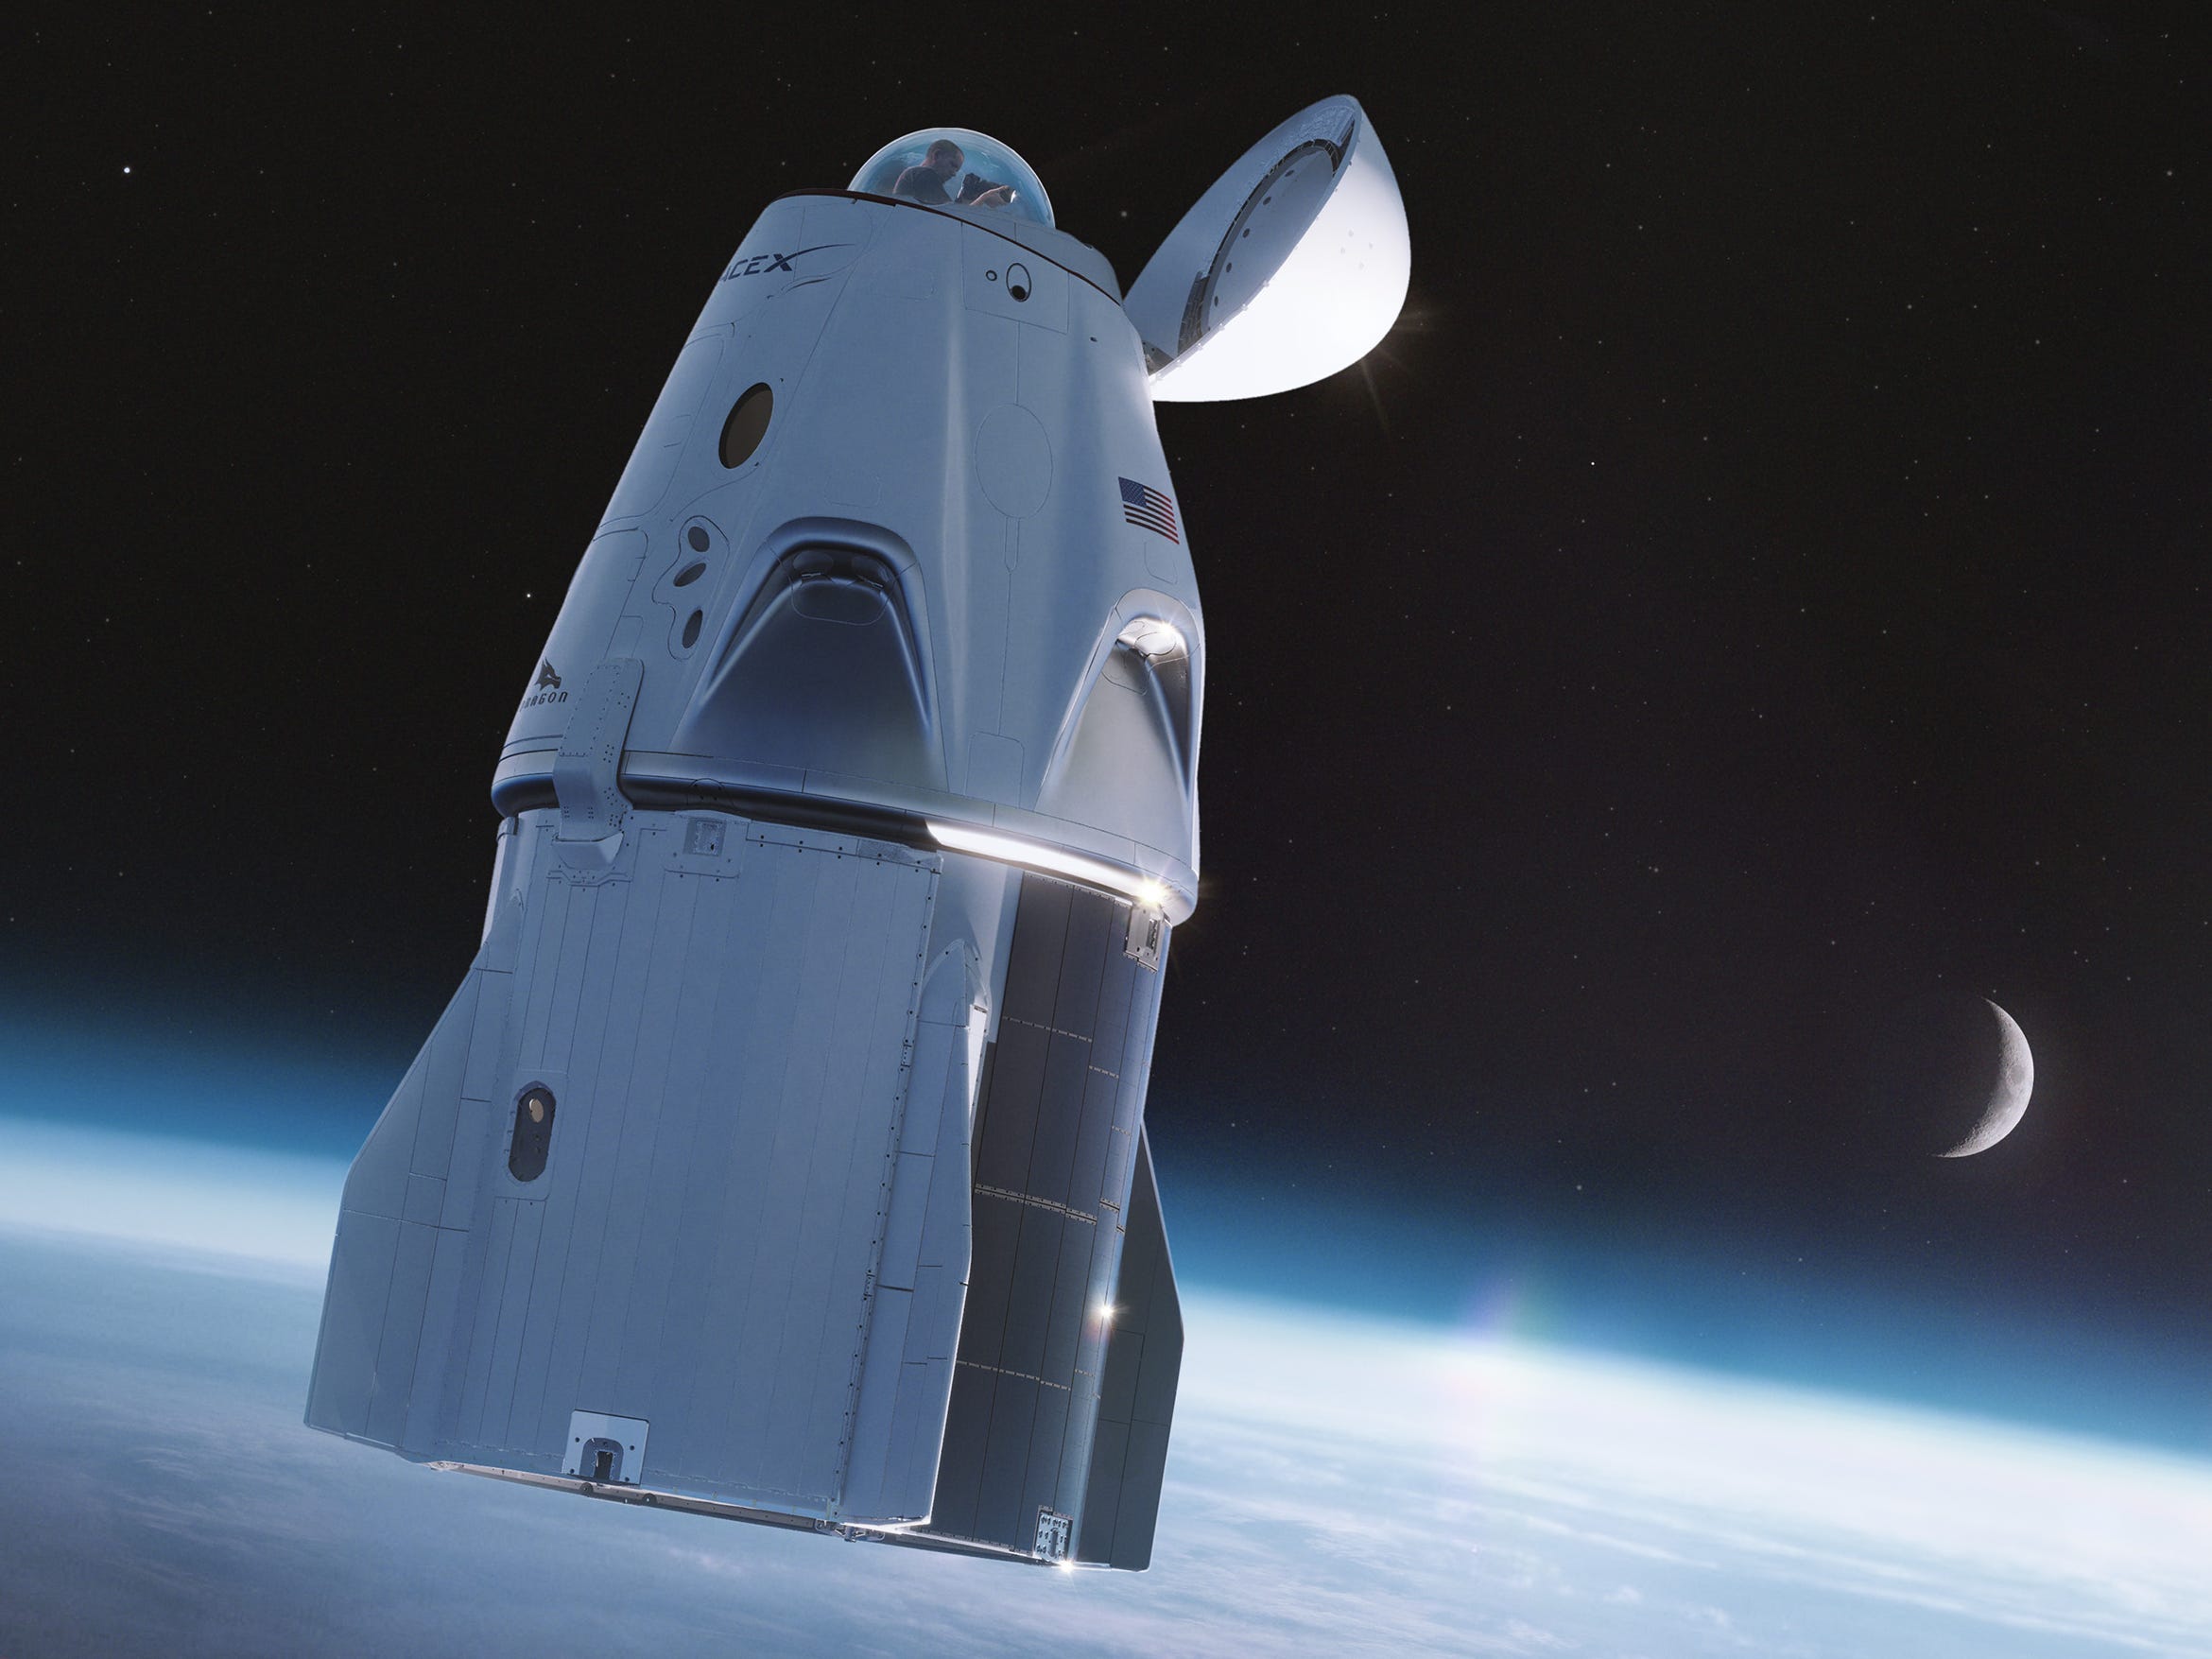 Een afbeelding van SpaceX's Crew Dragon ruimteschip met een glazen koepel "cupola" op zijn neus. Afbeelding: SpaceX